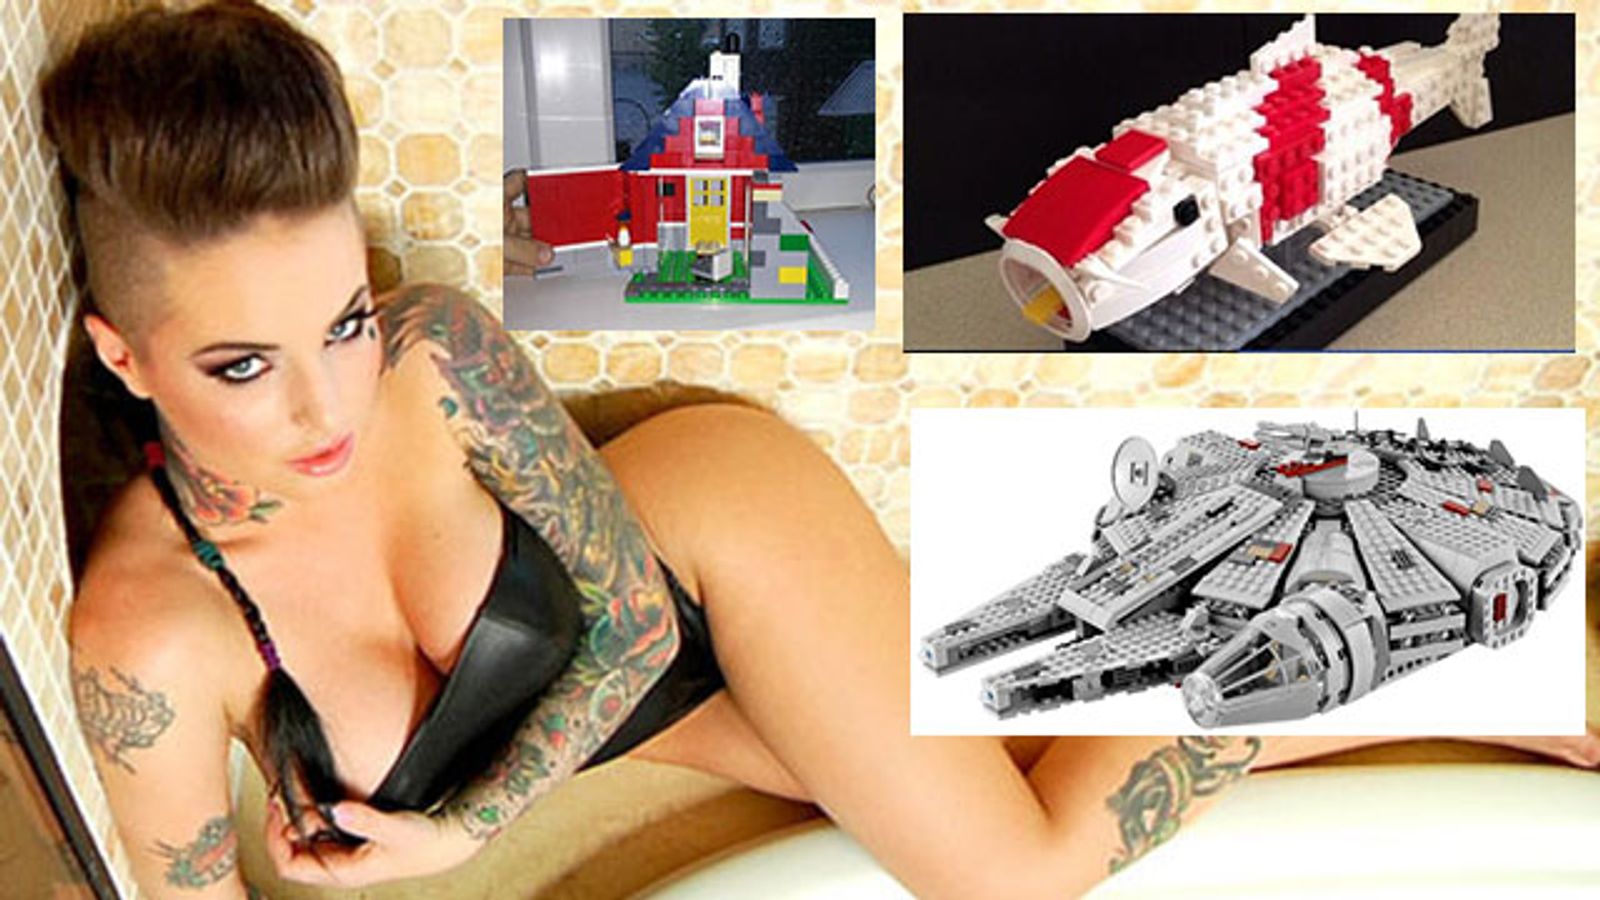 Christy Mack BJ-For-Lego Offer Gets Shut Down